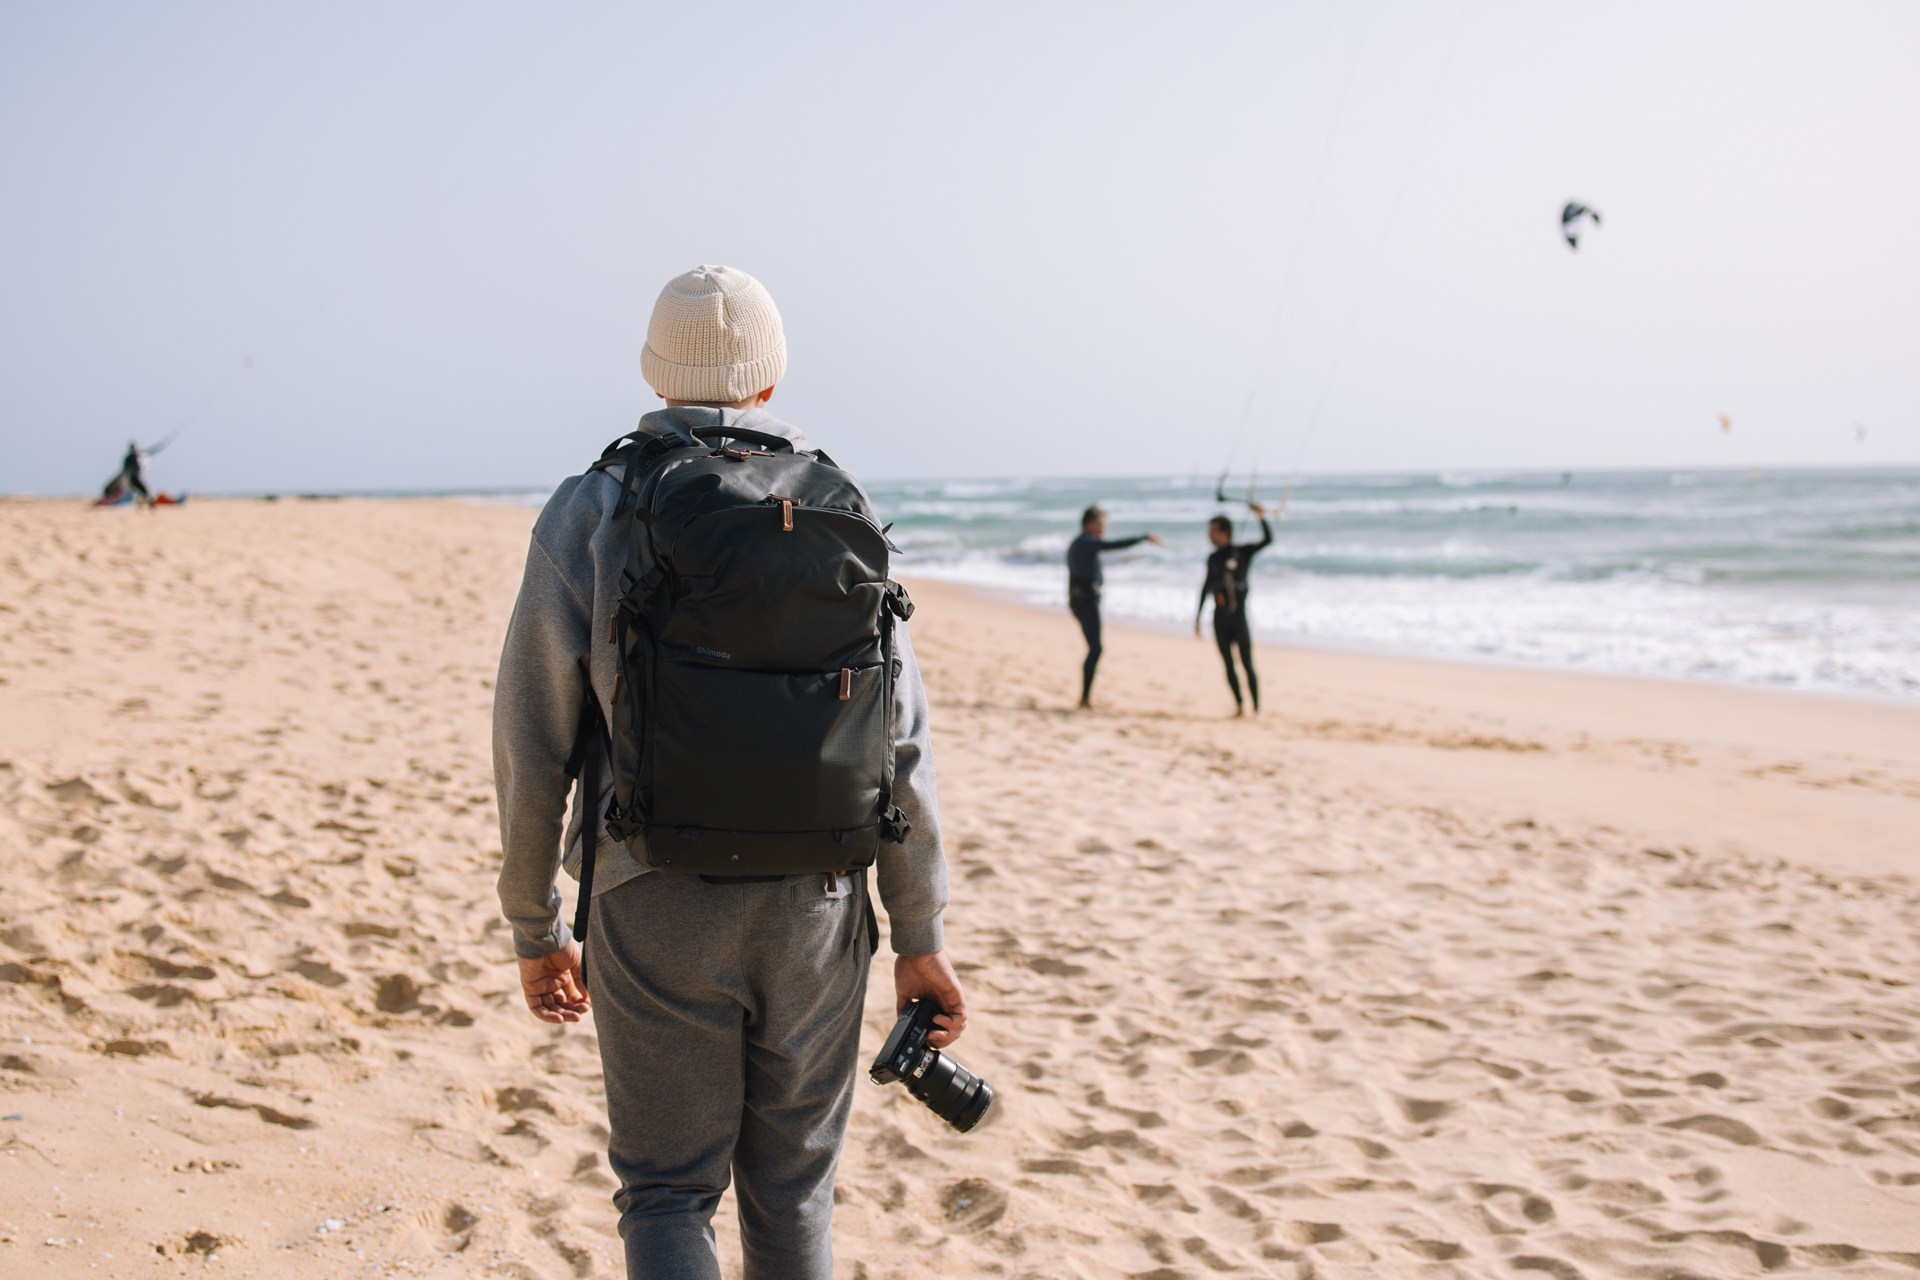 Shimoda Explore V2 to świetny plecak podróżniczy na wiele okazji. Na zdjęciu w trakcie fotografowania kitsurferów w okolicach Faro w Portugalii. Fot. Martyna Basel.